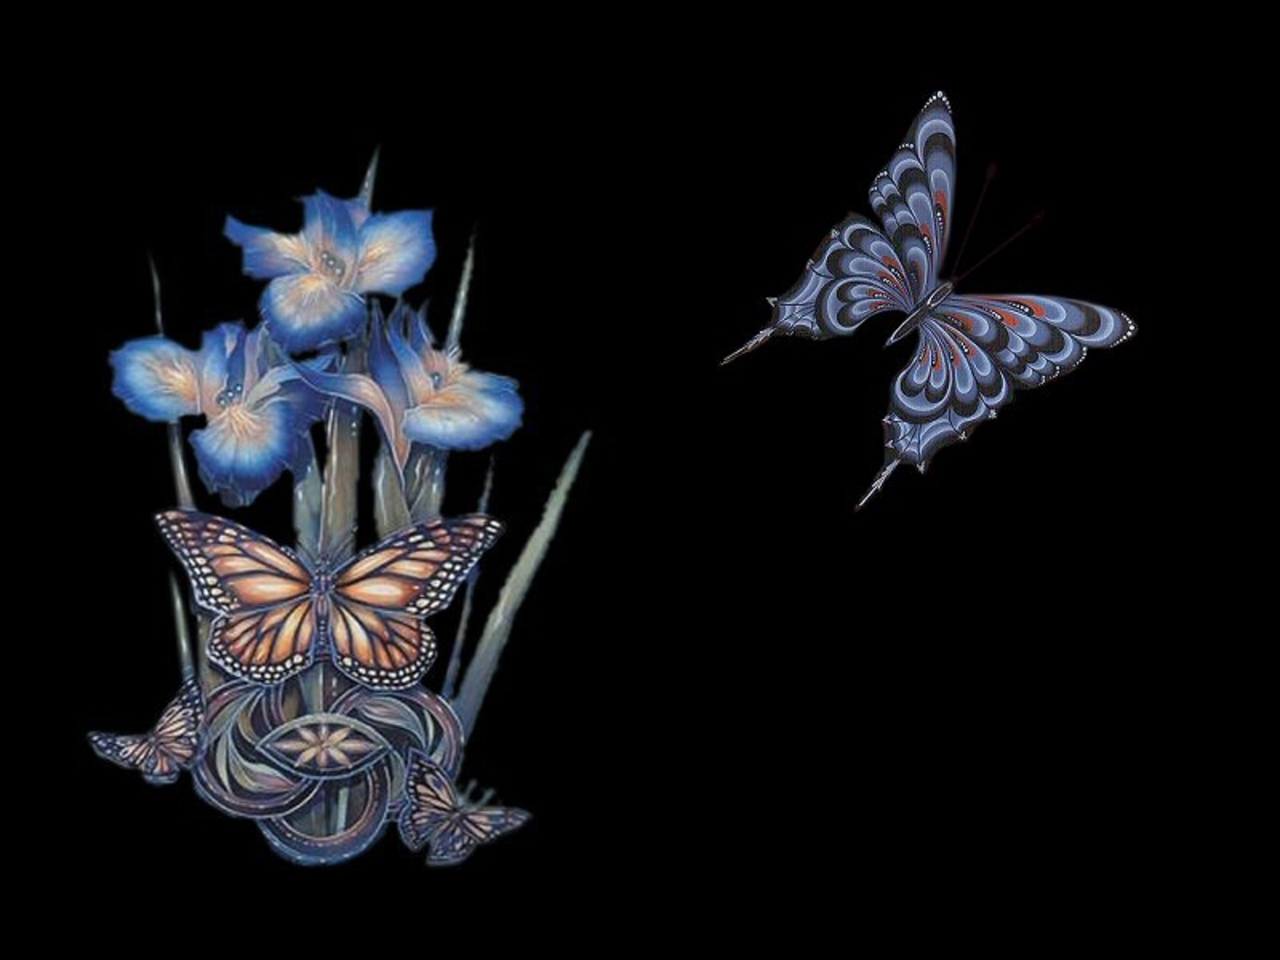 Скачать обои бесплатно Природа, Цветок, Бабочка, Орхидея, Художественные картинка на рабочий стол ПК